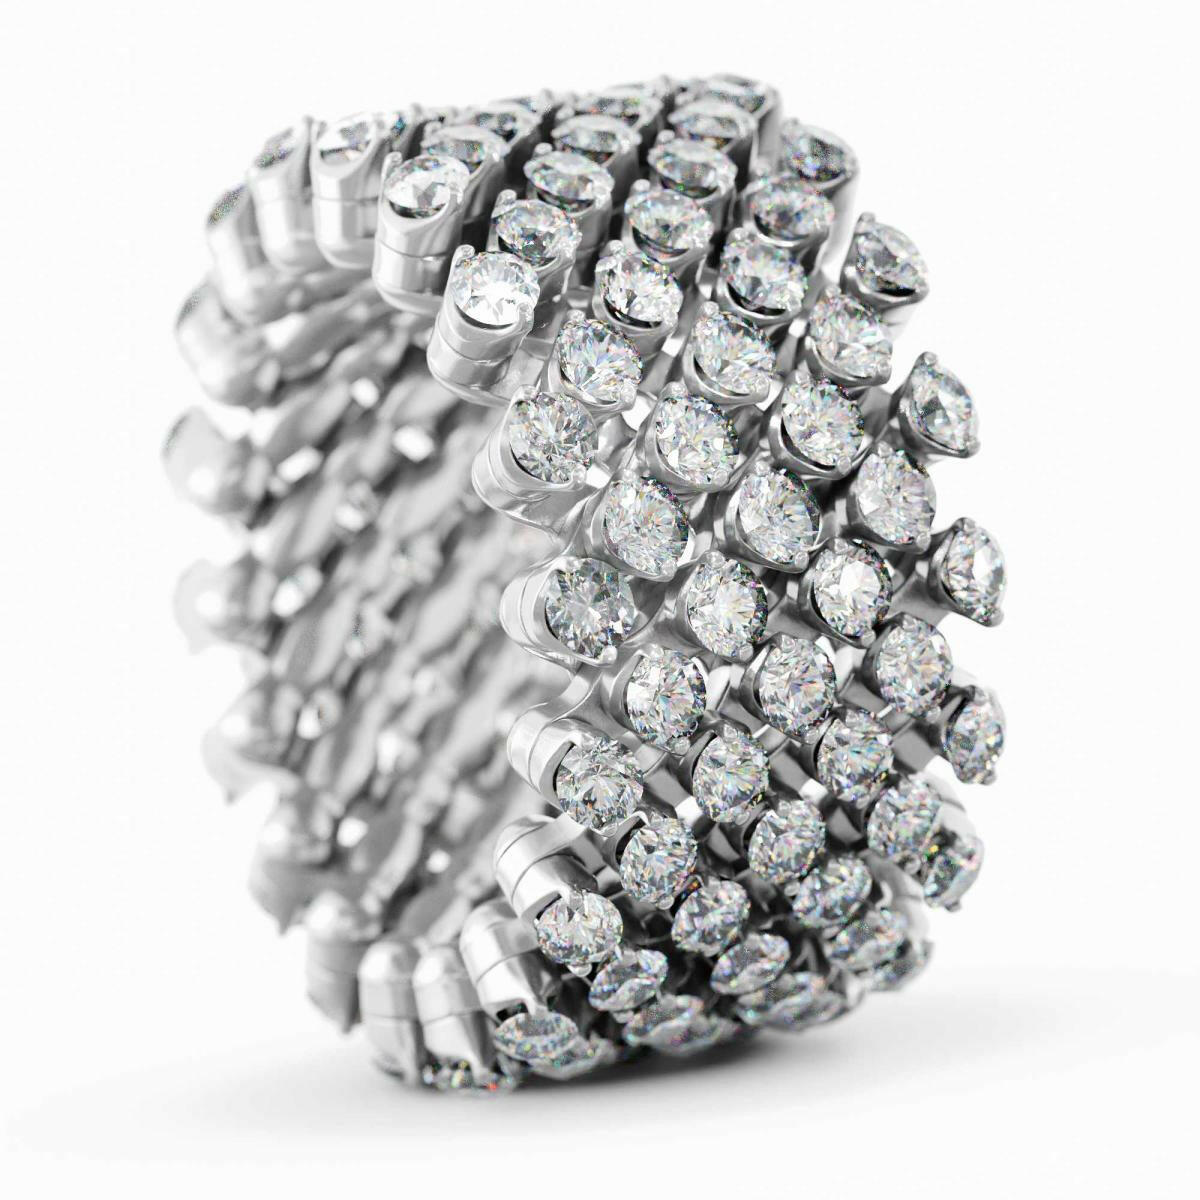 Brevetto Multi-Size Ring von Serafino Consoli online kaufen (Ref. RMS 7F4 WG WD)